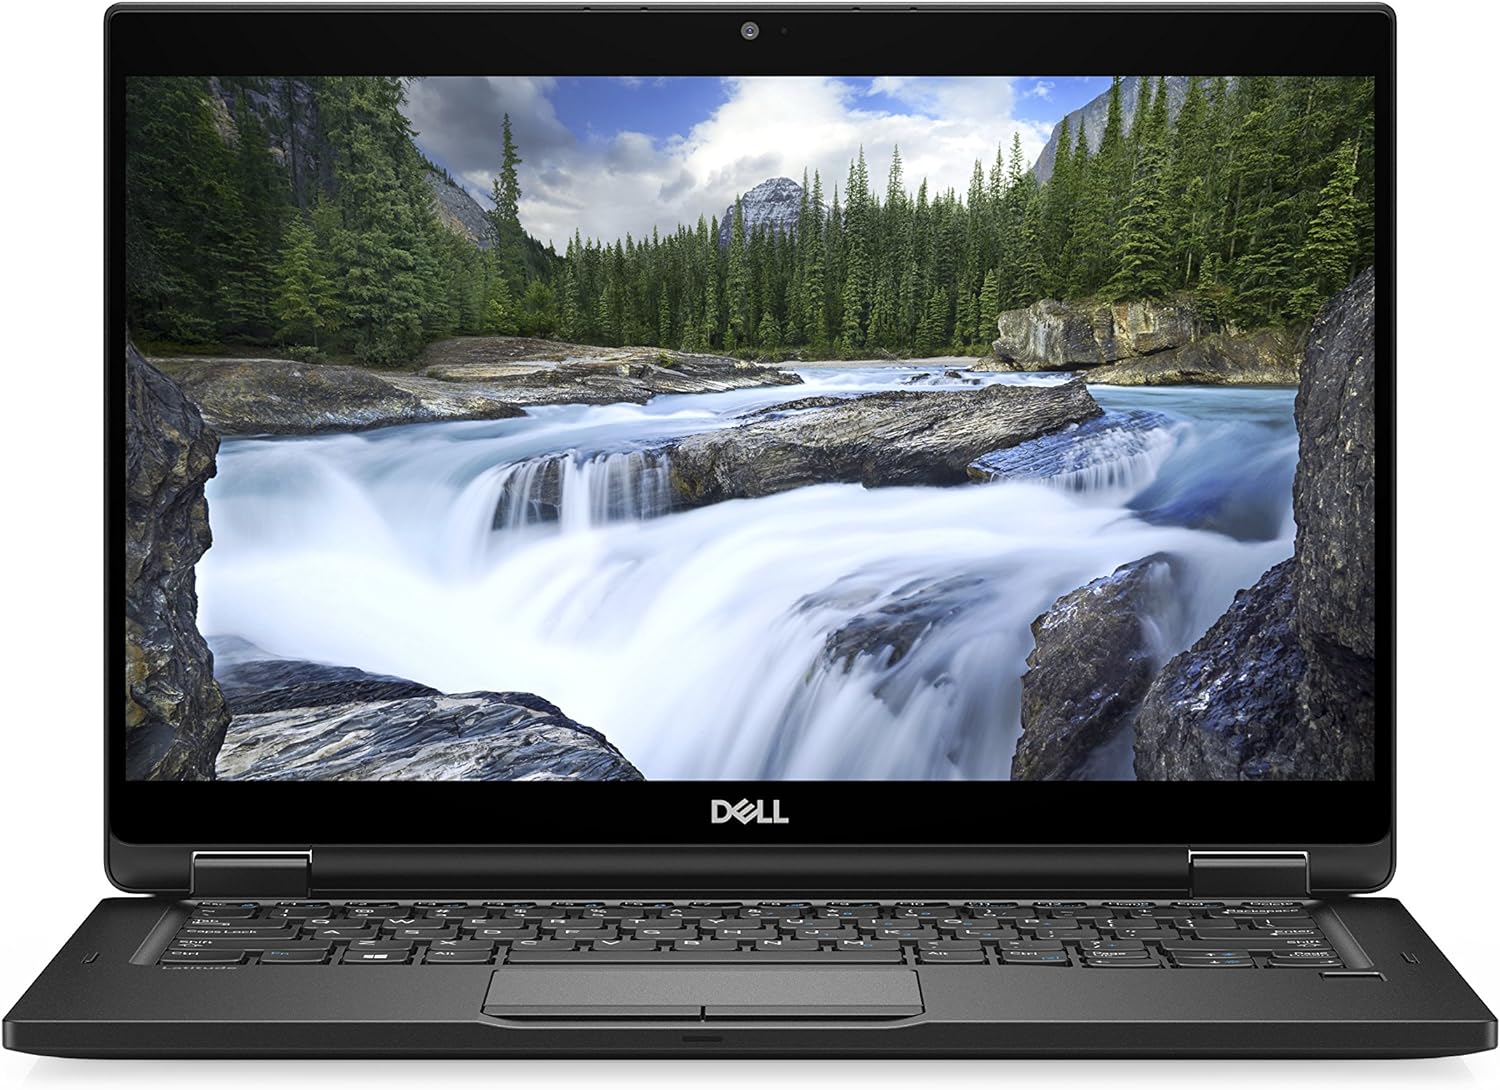 Notebook ricondizionato Dell Latitude E7390 - Processore: i5-8350U - Ram: 8 GB - Archiviazione: 512 SSD - 13.3" - Windows 10 - Grado A - Garanzia 1 anno Disponibilità immediata Dell